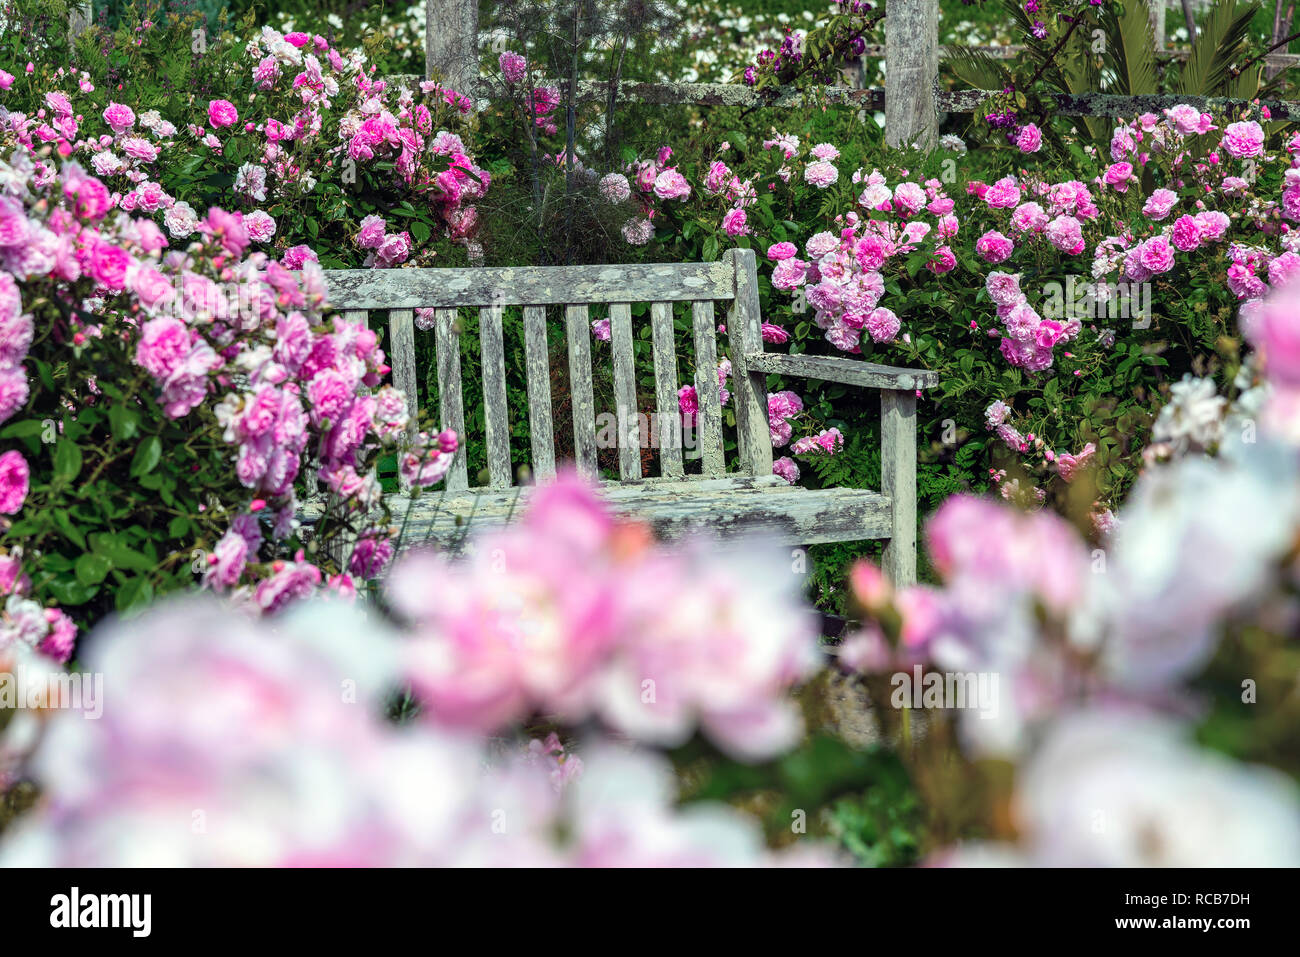 Alte gartenbank von rosa blühende Rosen im traditionellen Englischen Garten umgeben, Sussex, Südengland, Großbritannien Stockfoto